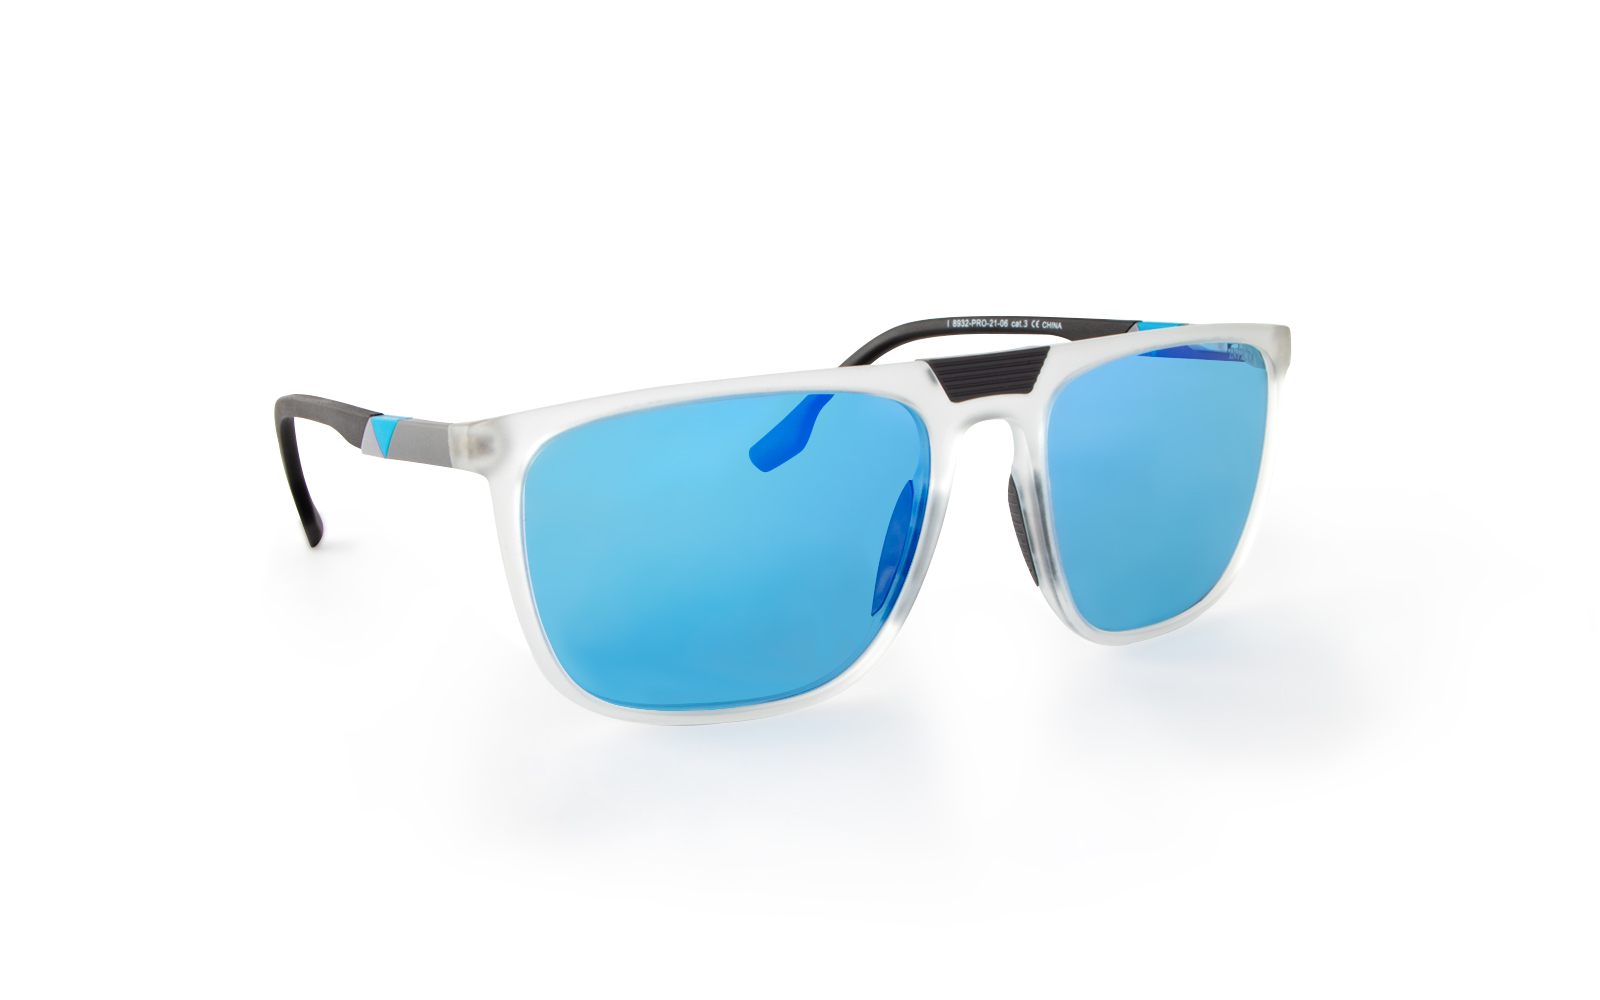 Invicta Men's Pro Diver Retro Square Sunglasses, Blue (8932-PRO-21-06)